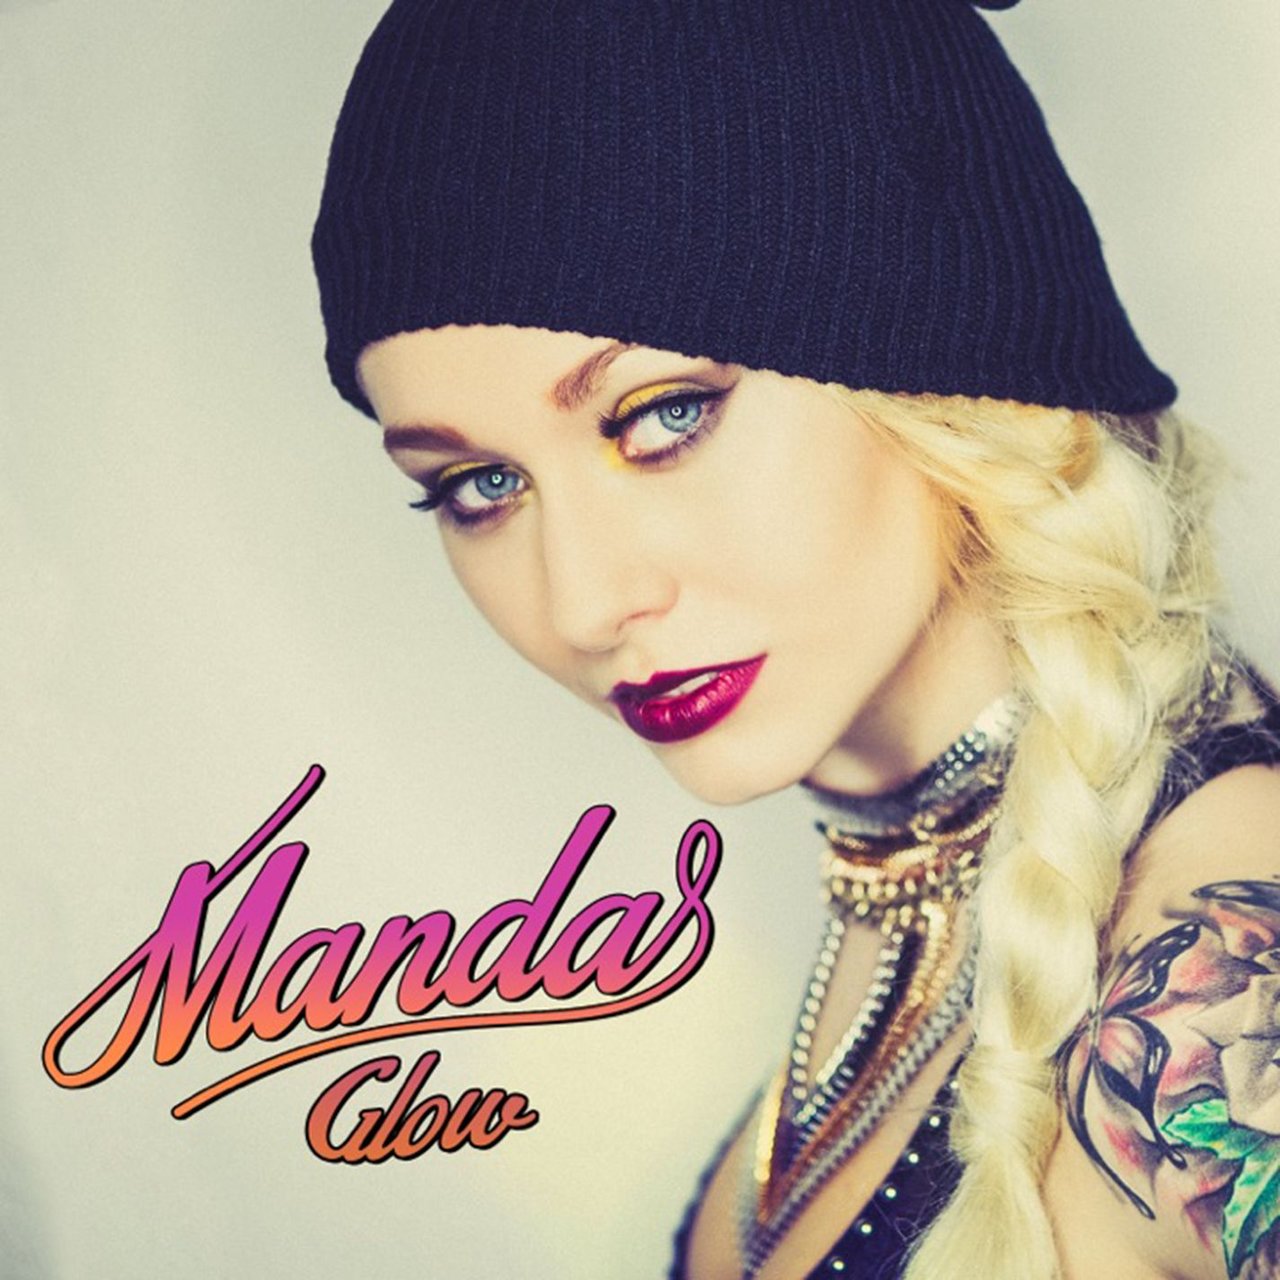 Manda — Glow cover artwork